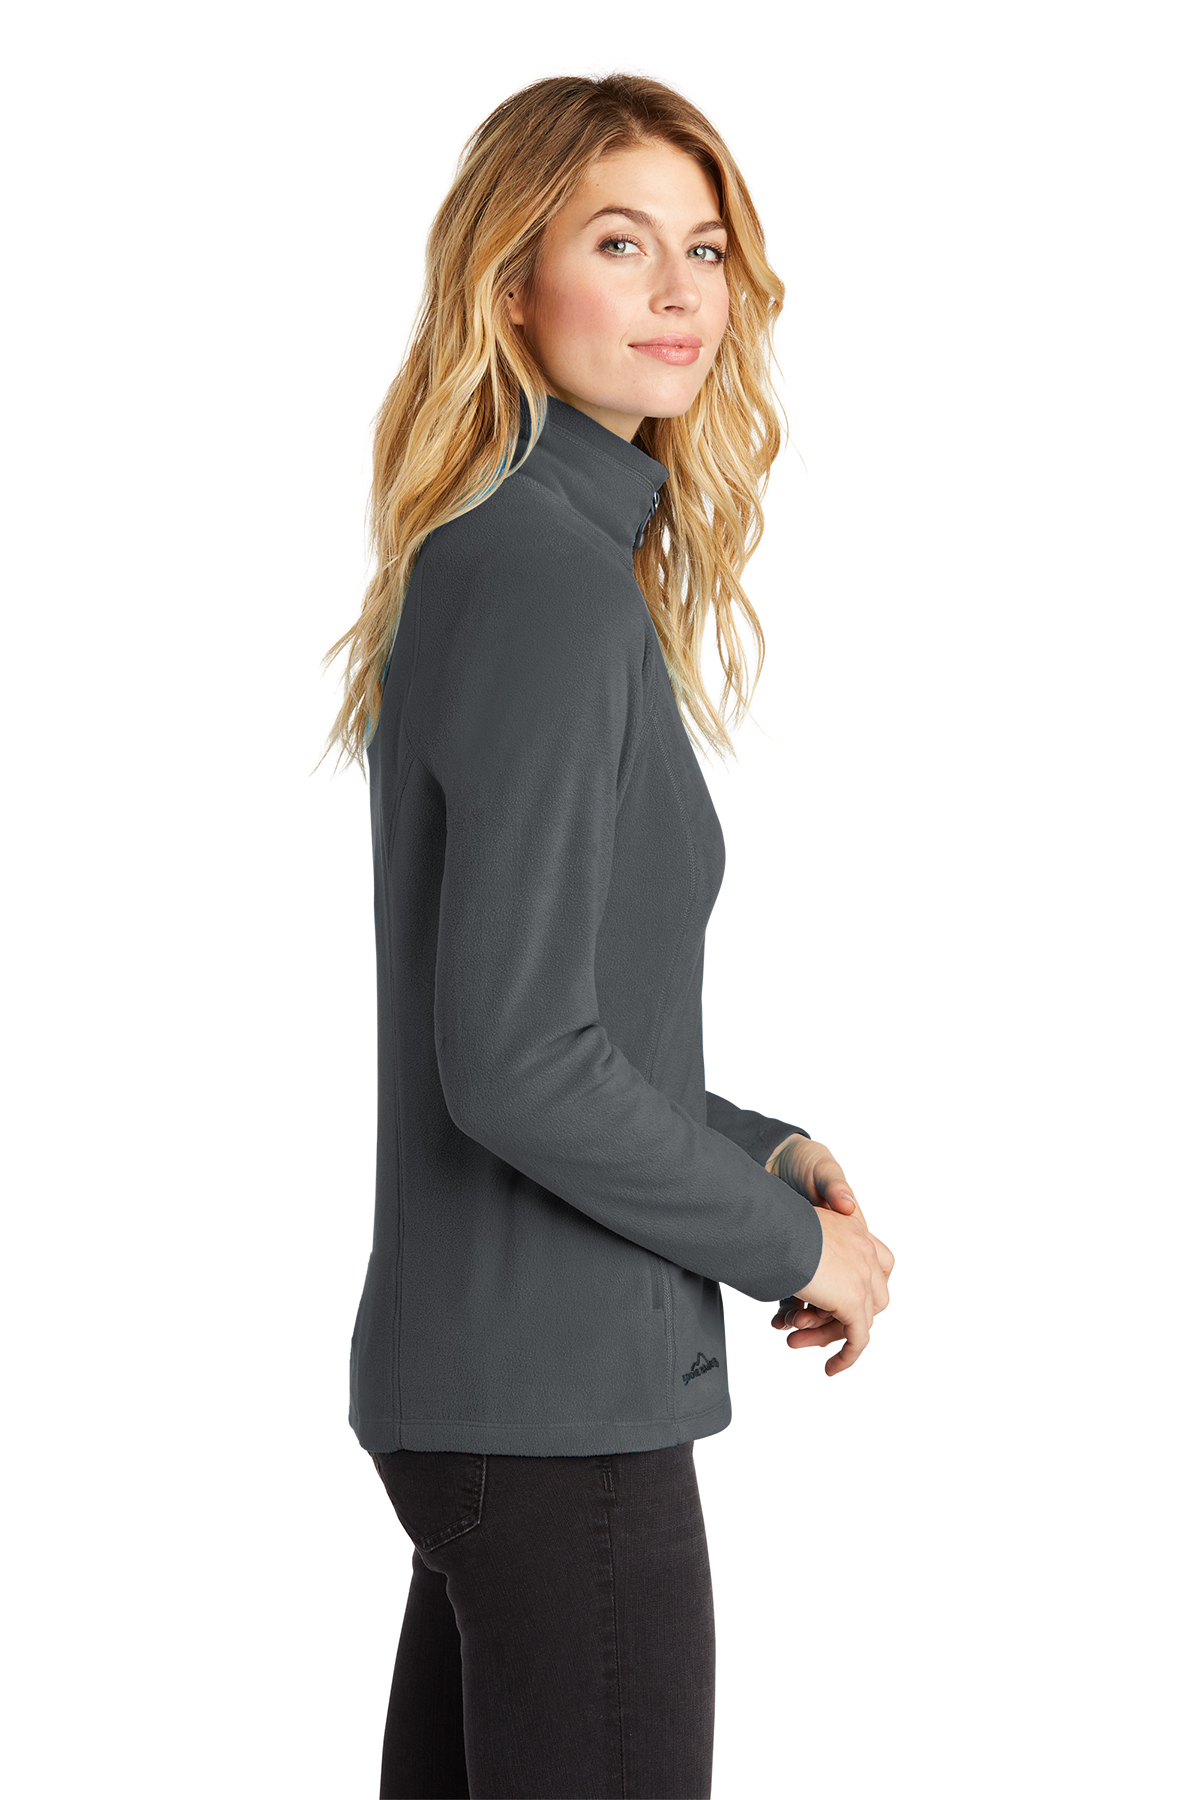 Eddie Bauer Ladies Full-Zip Microfleece Jacket | Product | SanMar